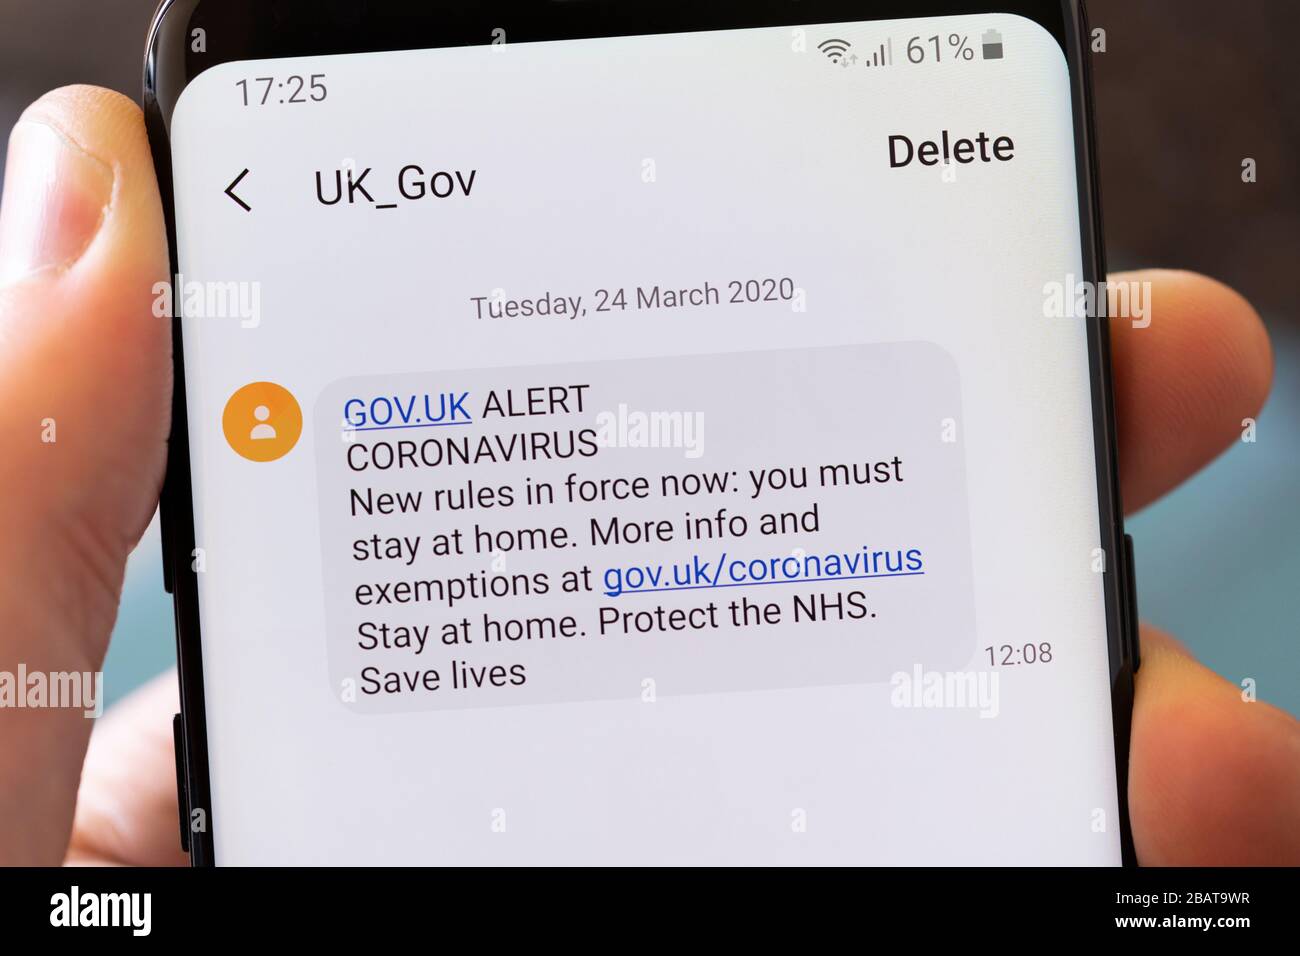 Mensaje de texto oficial del Gobierno del Reino Unido diciendo a la gente que se quedara en casa, protegiera el NHS y salvara vidas durante la epidemia de Coronavirus Covid 19 Foto de stock